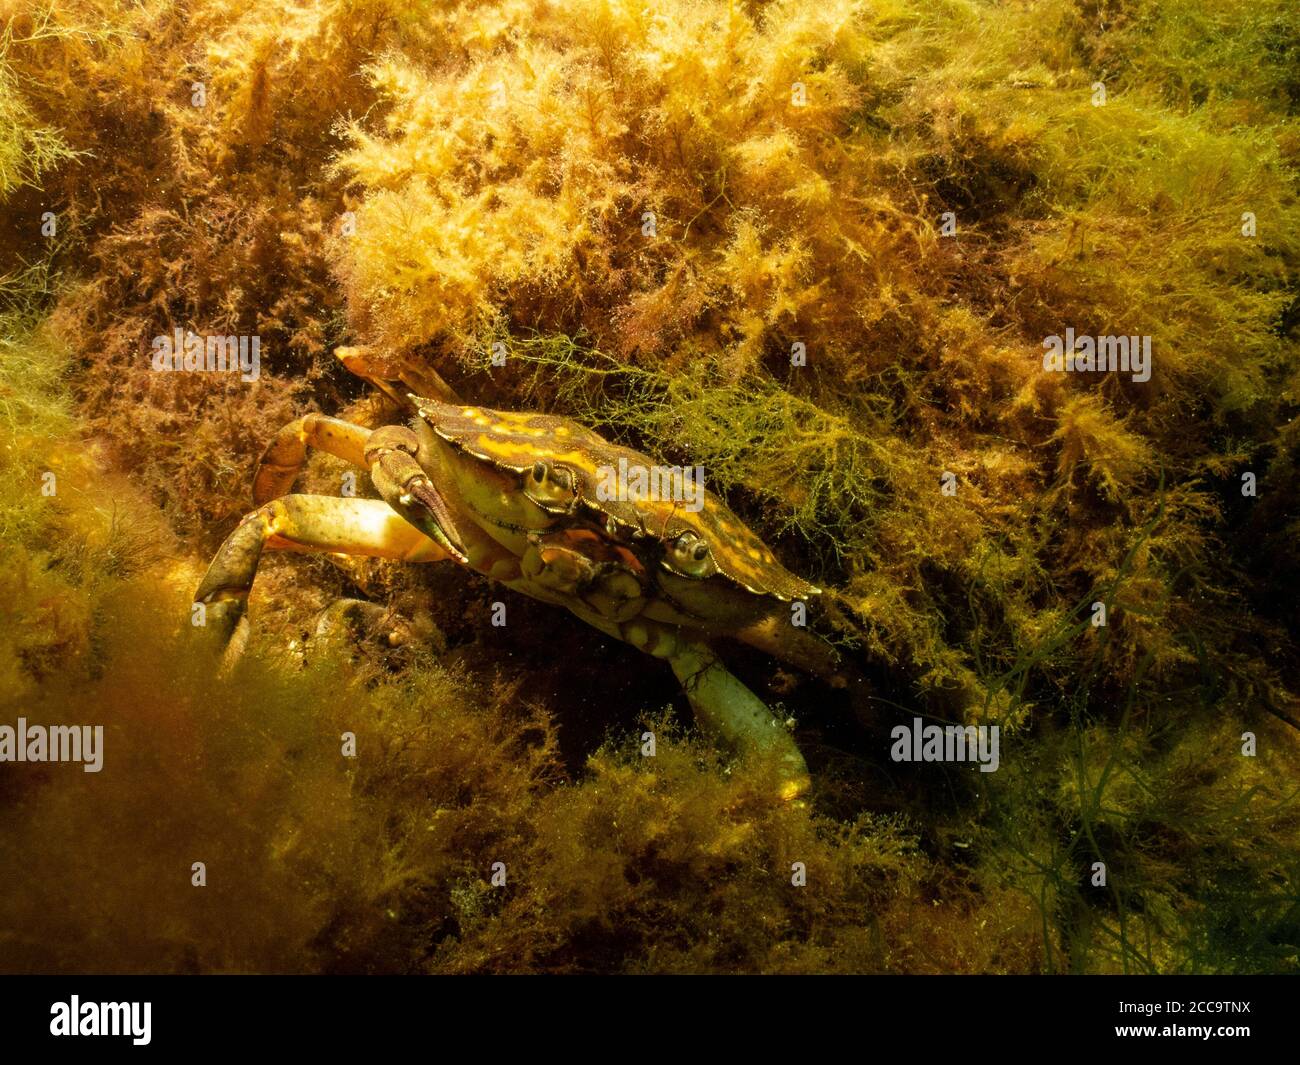 Ein Nahaufnahme Bild einer Krabbe unter Wasser. Bild aus Oresund, Malmö in Südschweden. Stockfoto